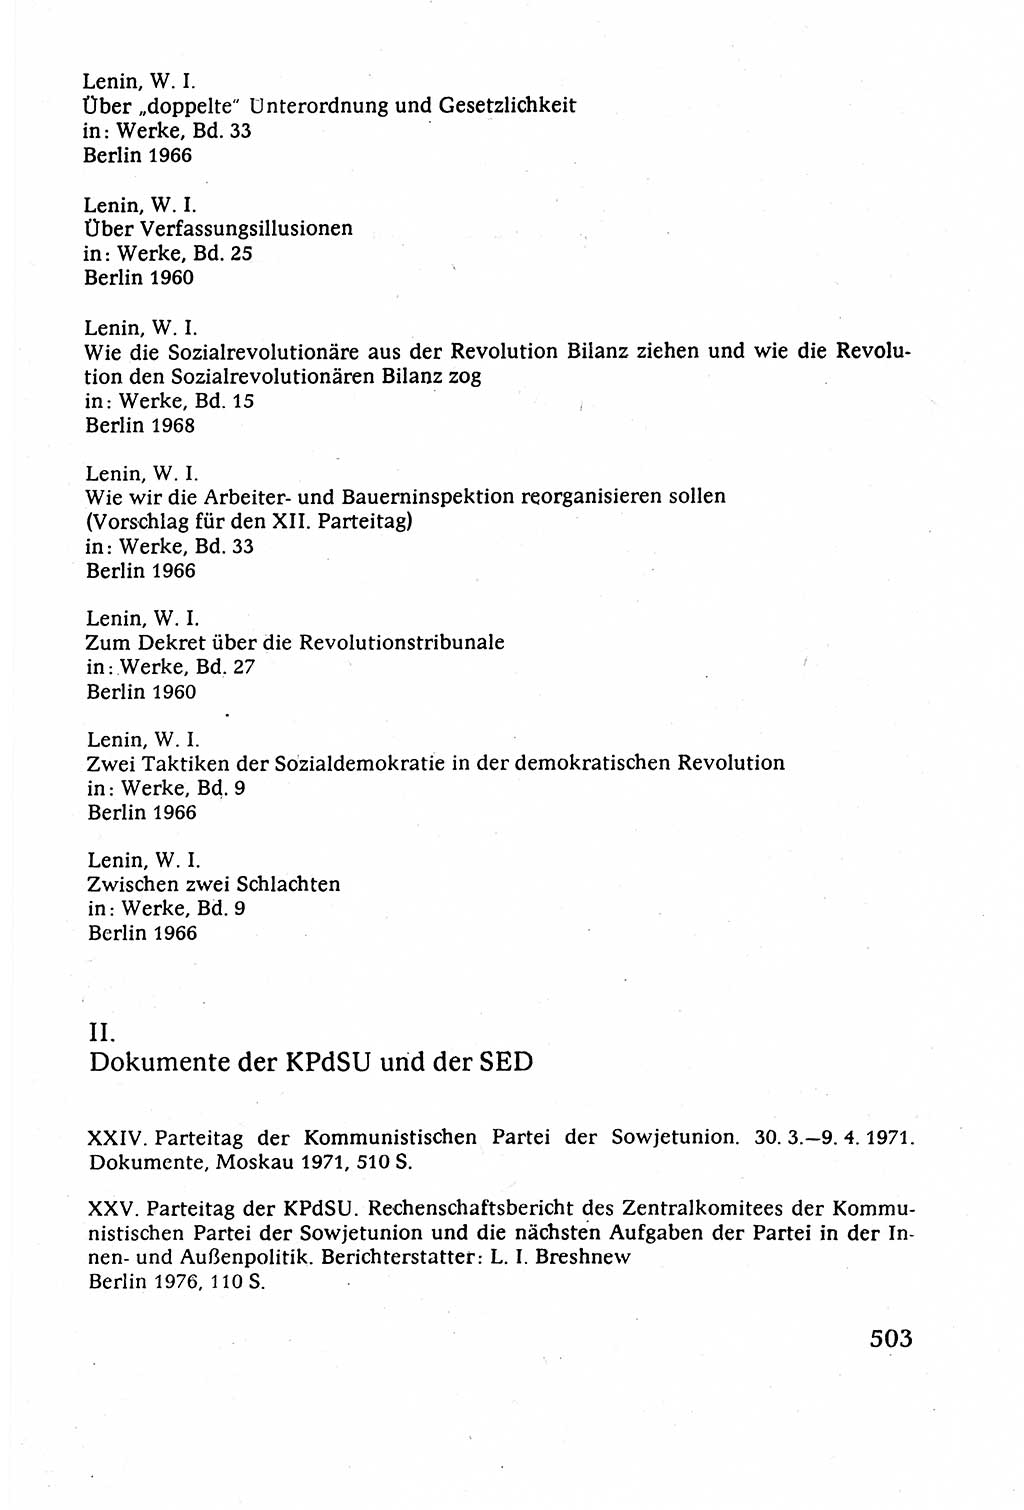 Staatsrecht der DDR (Deutsche Demokratische Republik), Lehrbuch 1977, Seite 503 (St.-R. DDR Lb. 1977, S. 503)